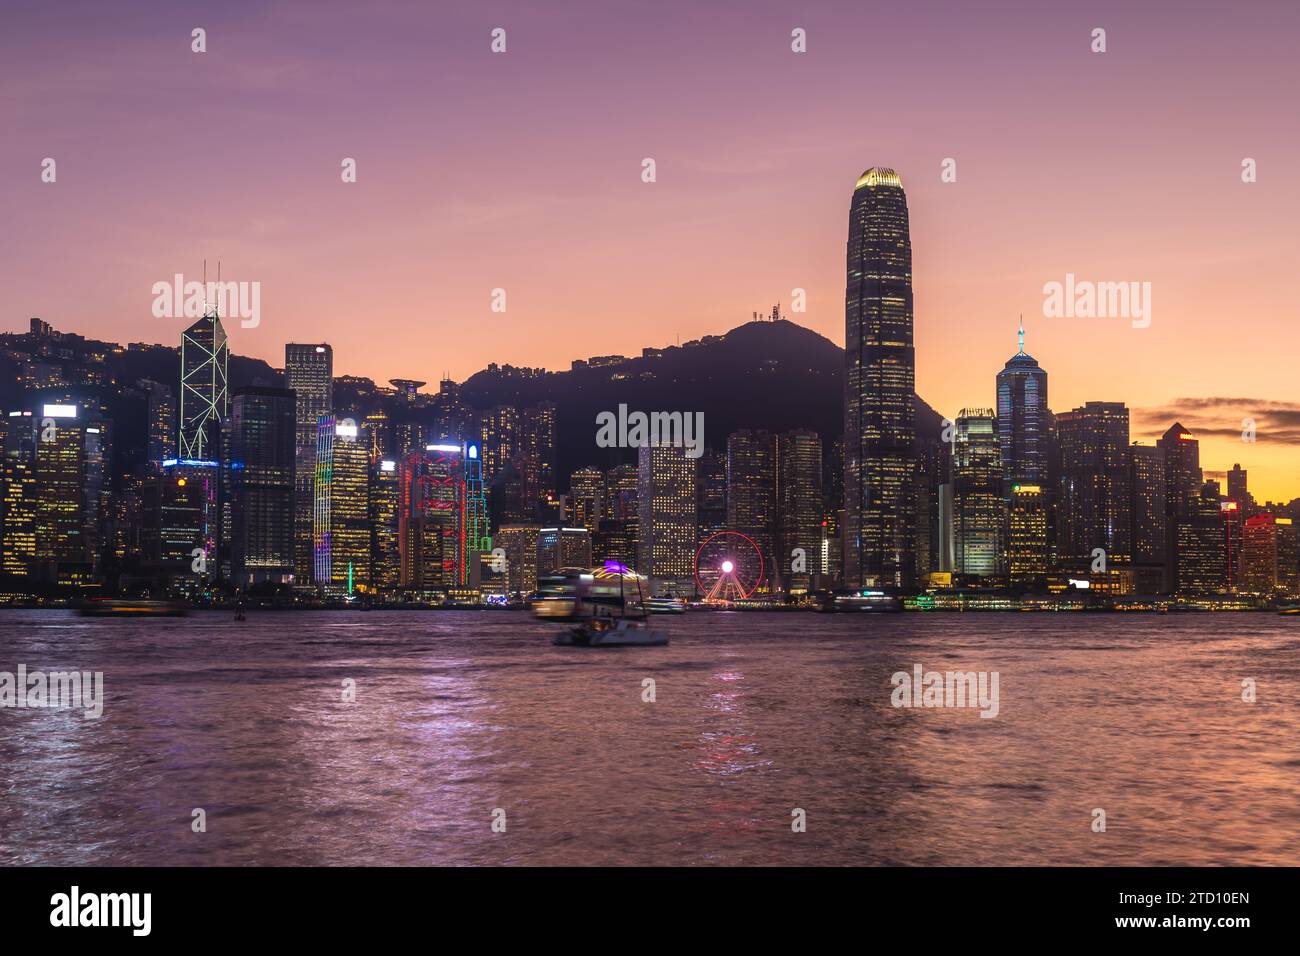 Vue nocturne du port de victoria et de l'île de hong kong, Chine Banque D'Images